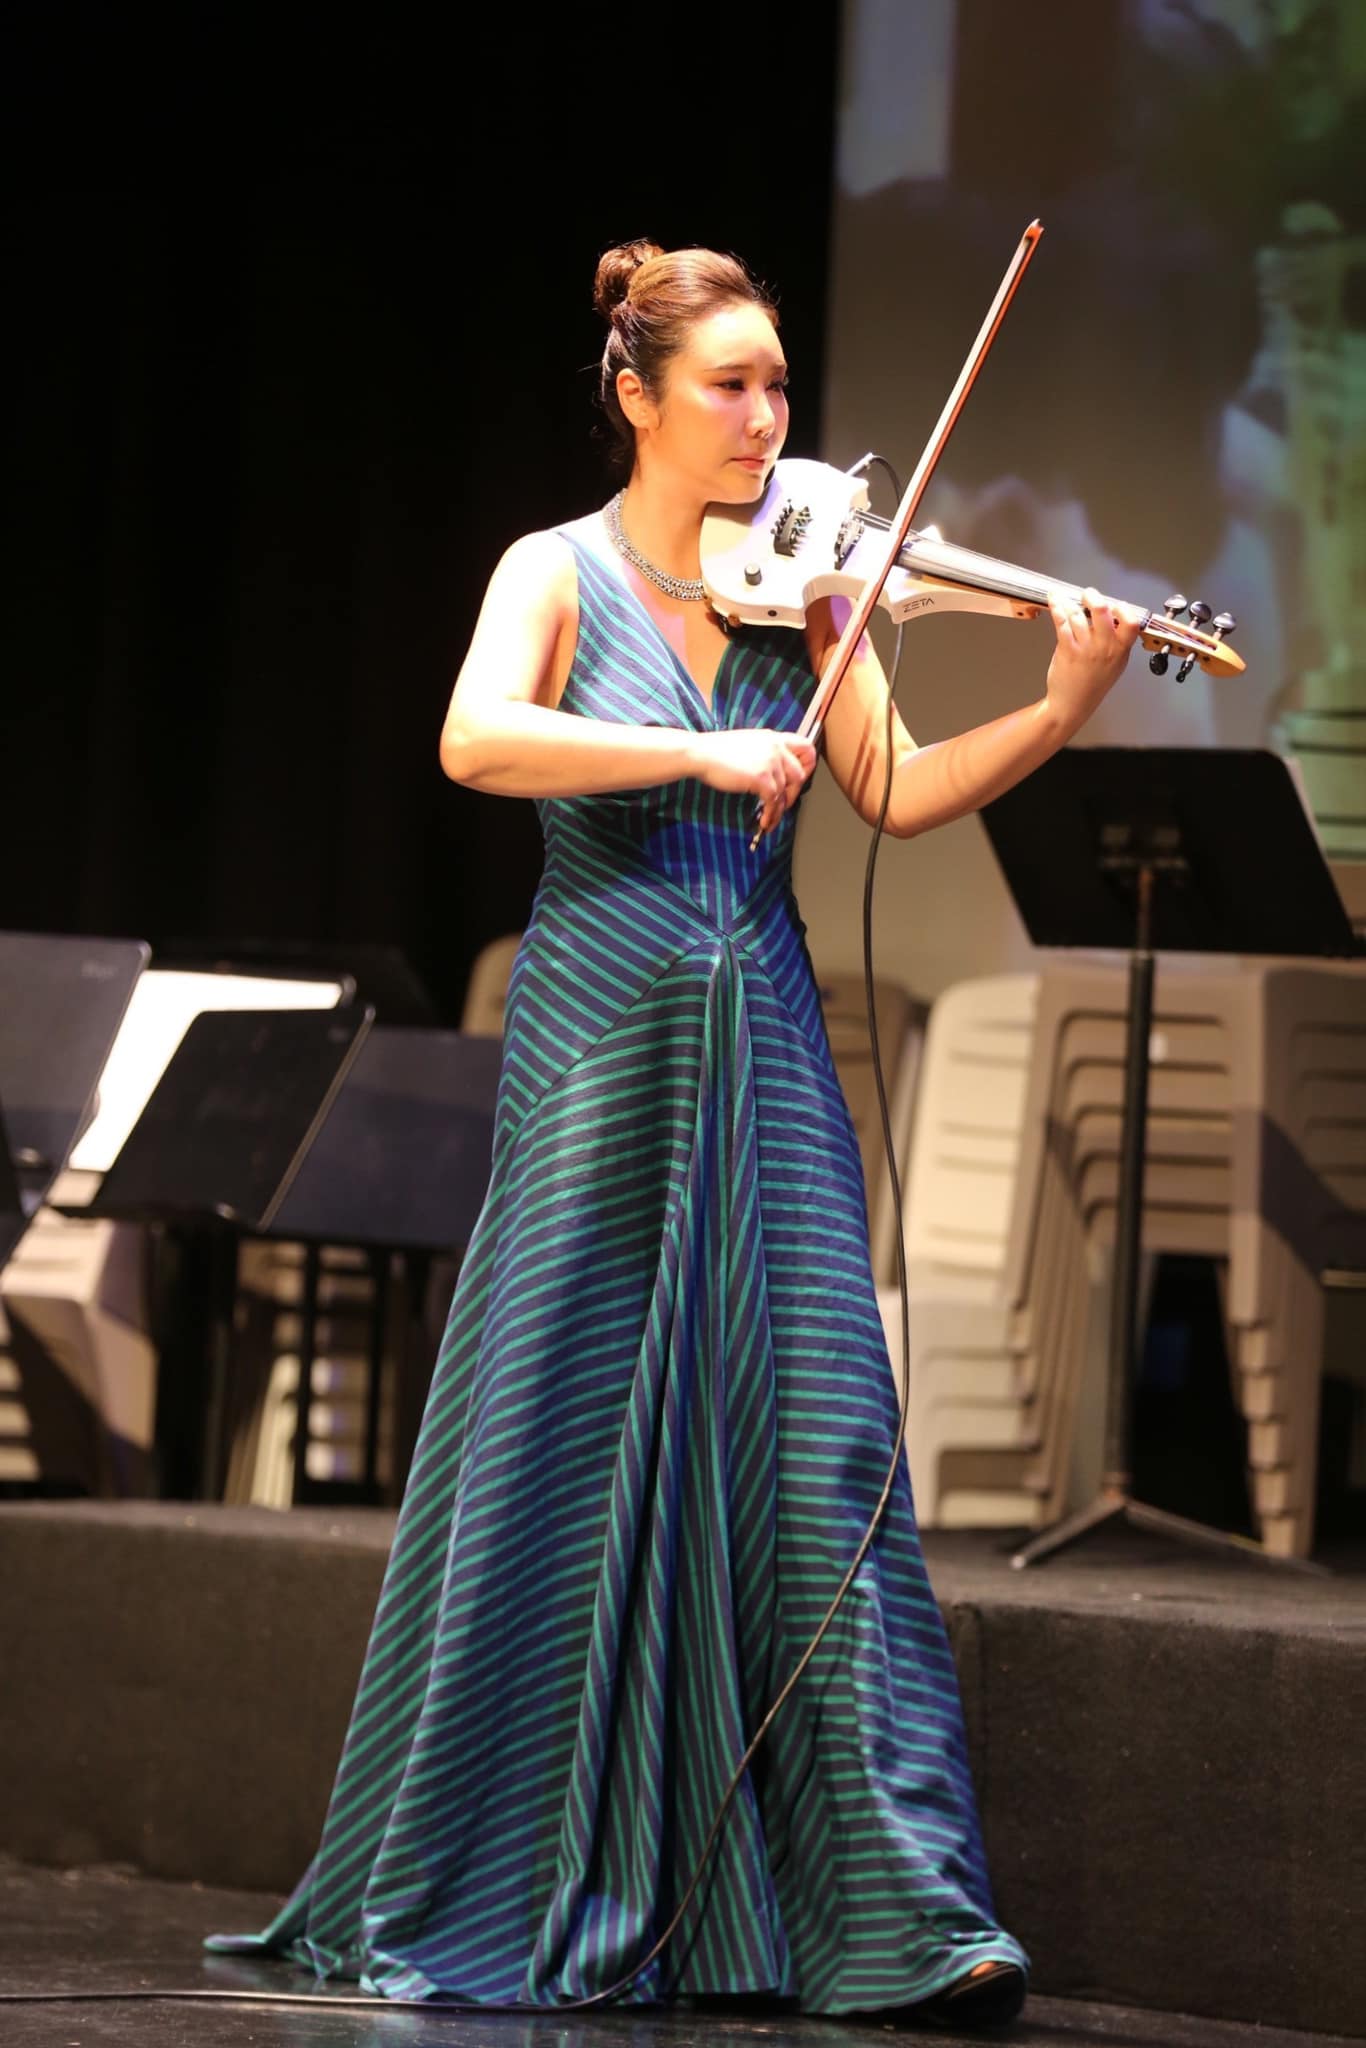 10 năm ở TP.HCM, nghệ sĩ violin Hàn Quốc miệt mài lan tỏa giá trị tích cực - Ảnh 4.